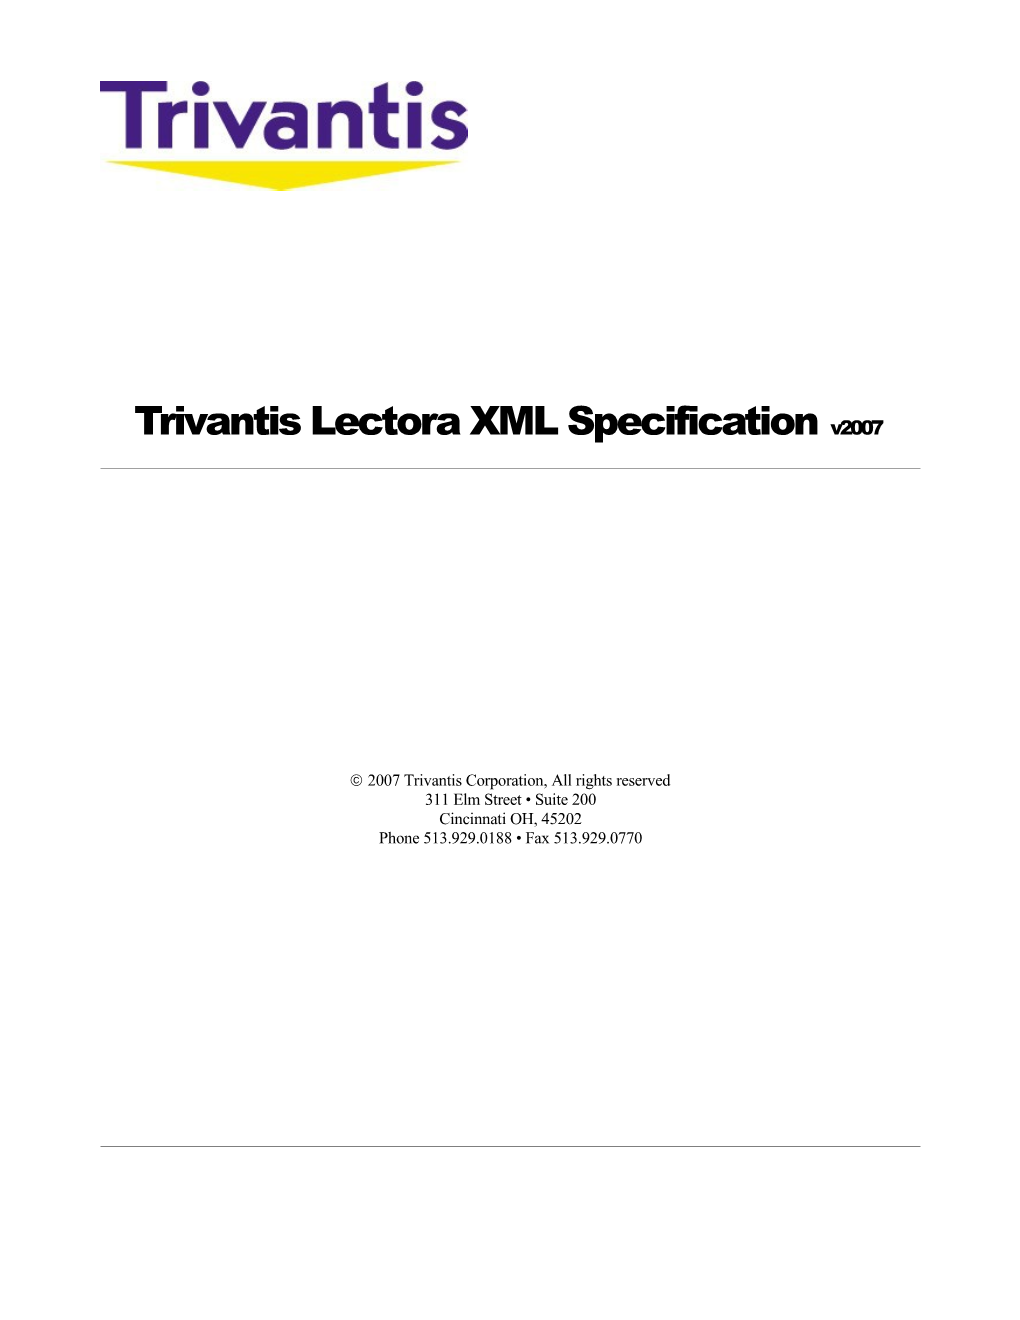 Trivantis Lectora XML Specification V2007